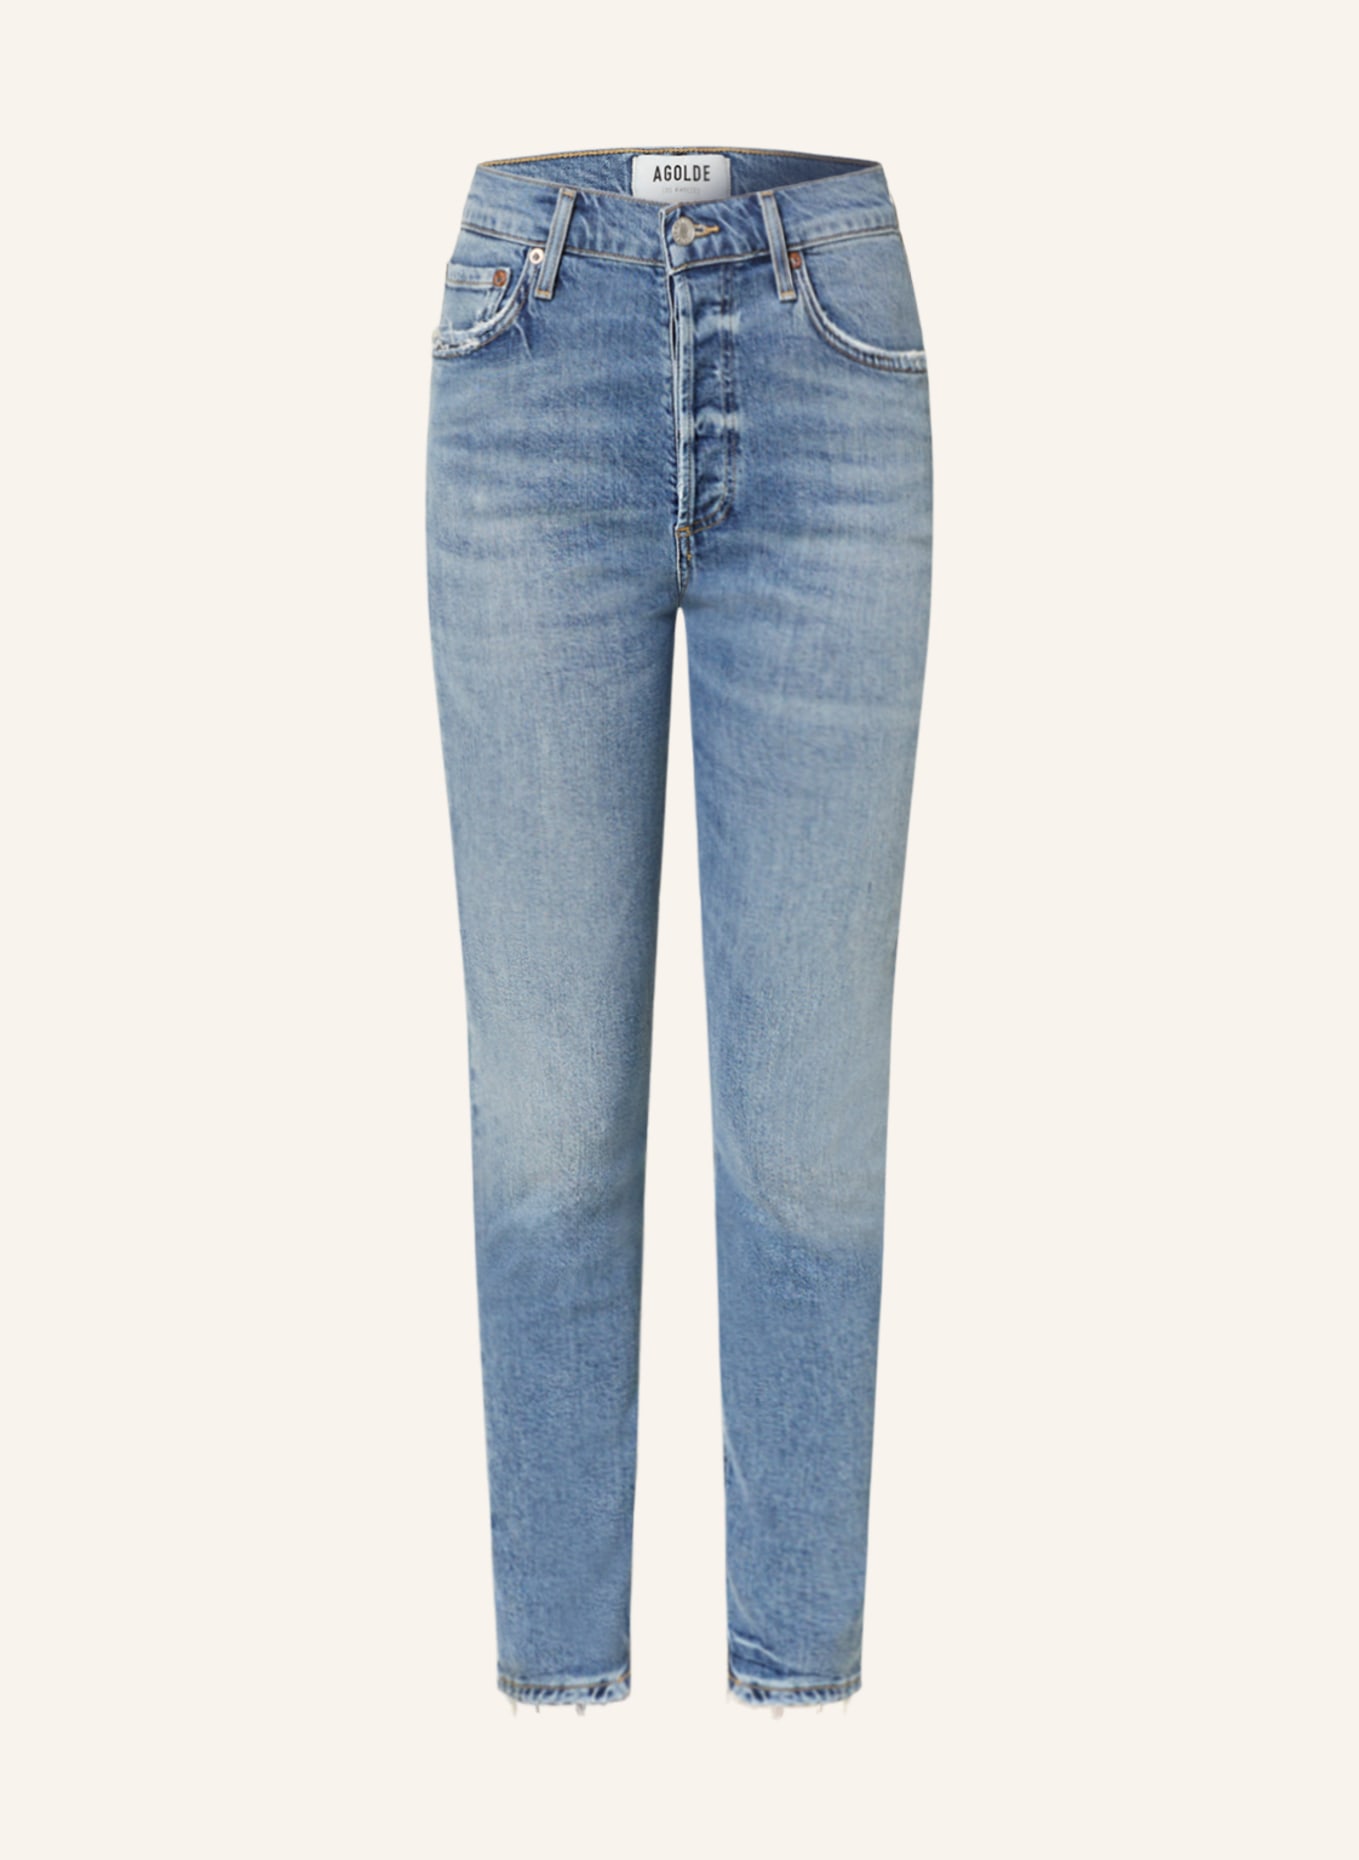 AGOLDE Jeans NICO, Farbe: Blame med vint indigo (Bild 1)